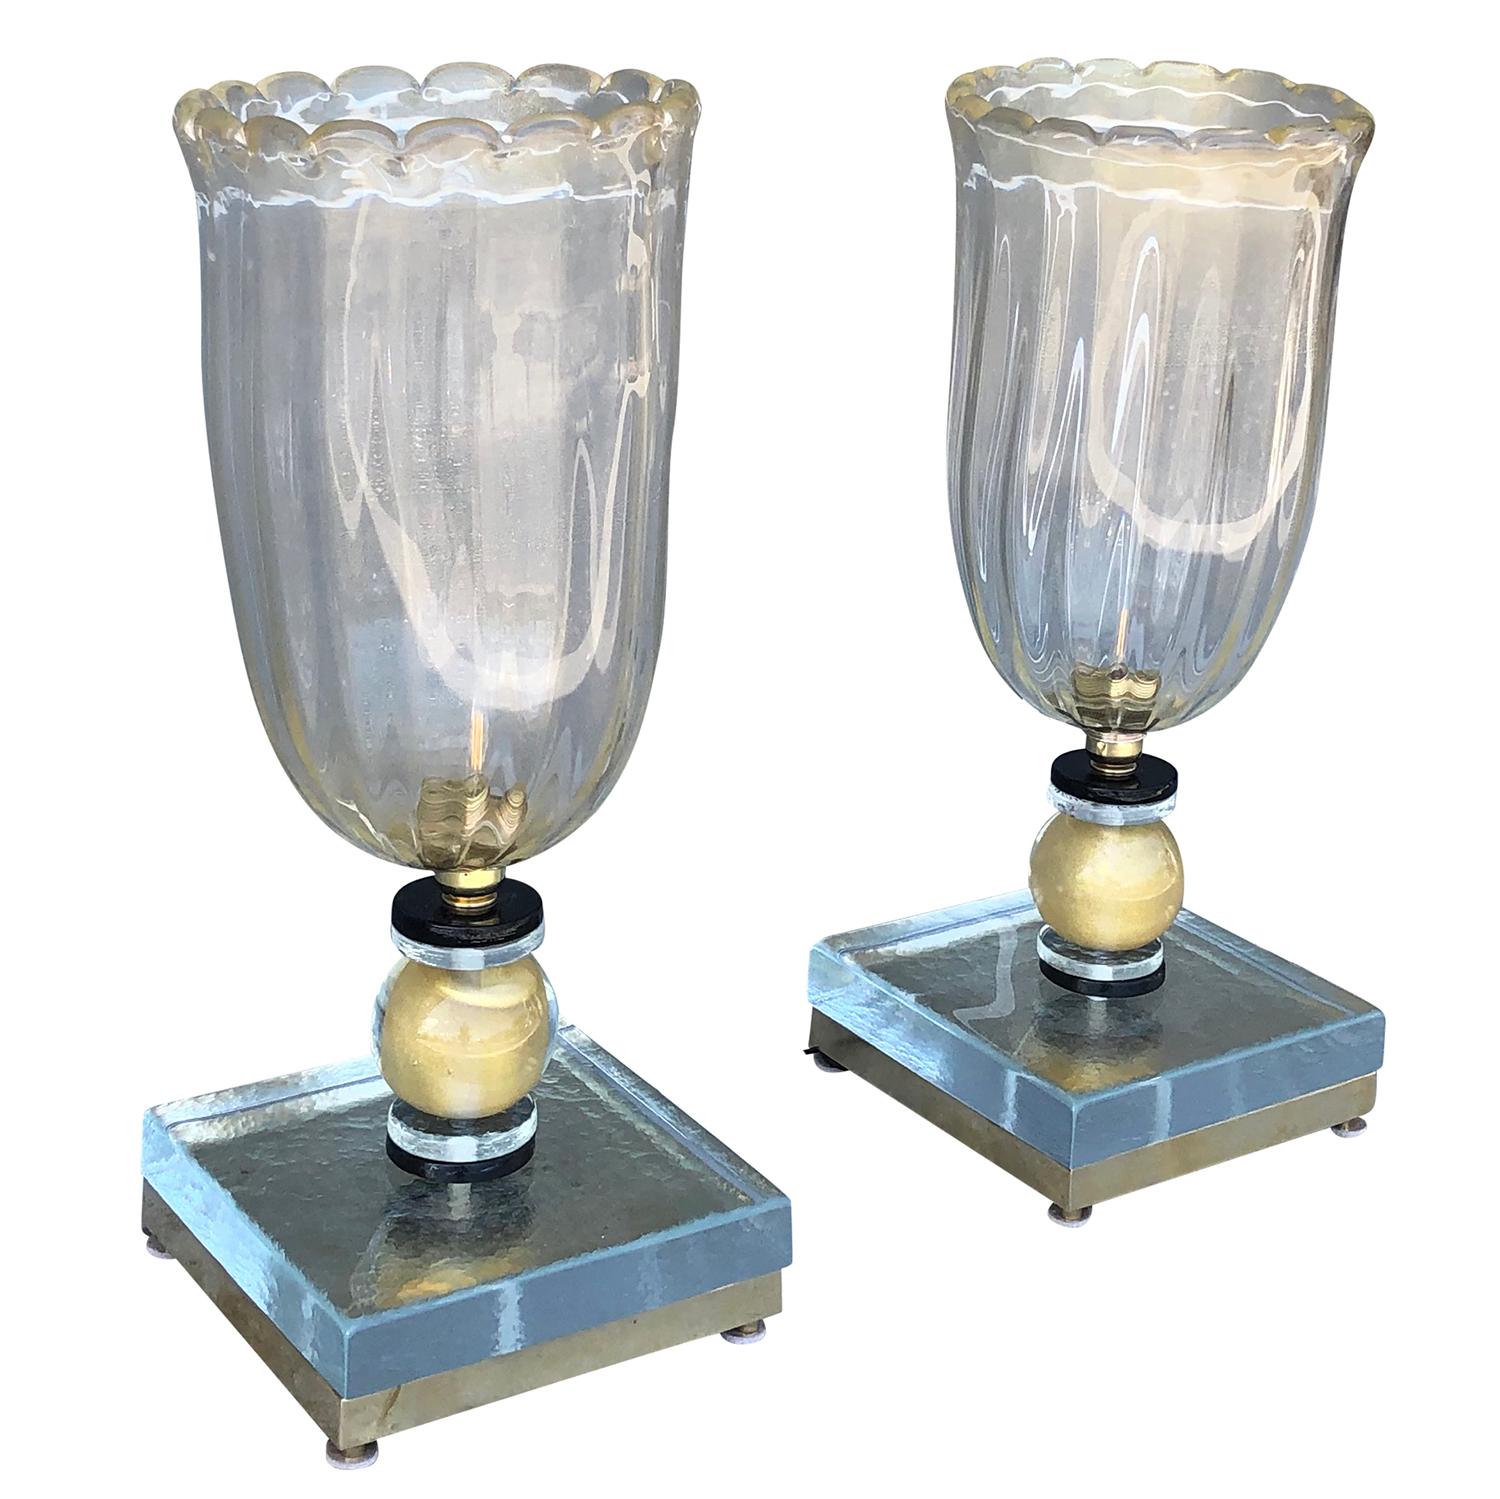 Zwei italienische Vintage-Tischlampen aus der Mitte des Jahrhunderts. Beide Lampen sind aus leicht gefrostetem, mundgeblasenem Murano-Glas gefertigt, eine Lichtfassung. Diese eleganten, authentischen, modernen Mid-Century-Tischlampen können im Büro,